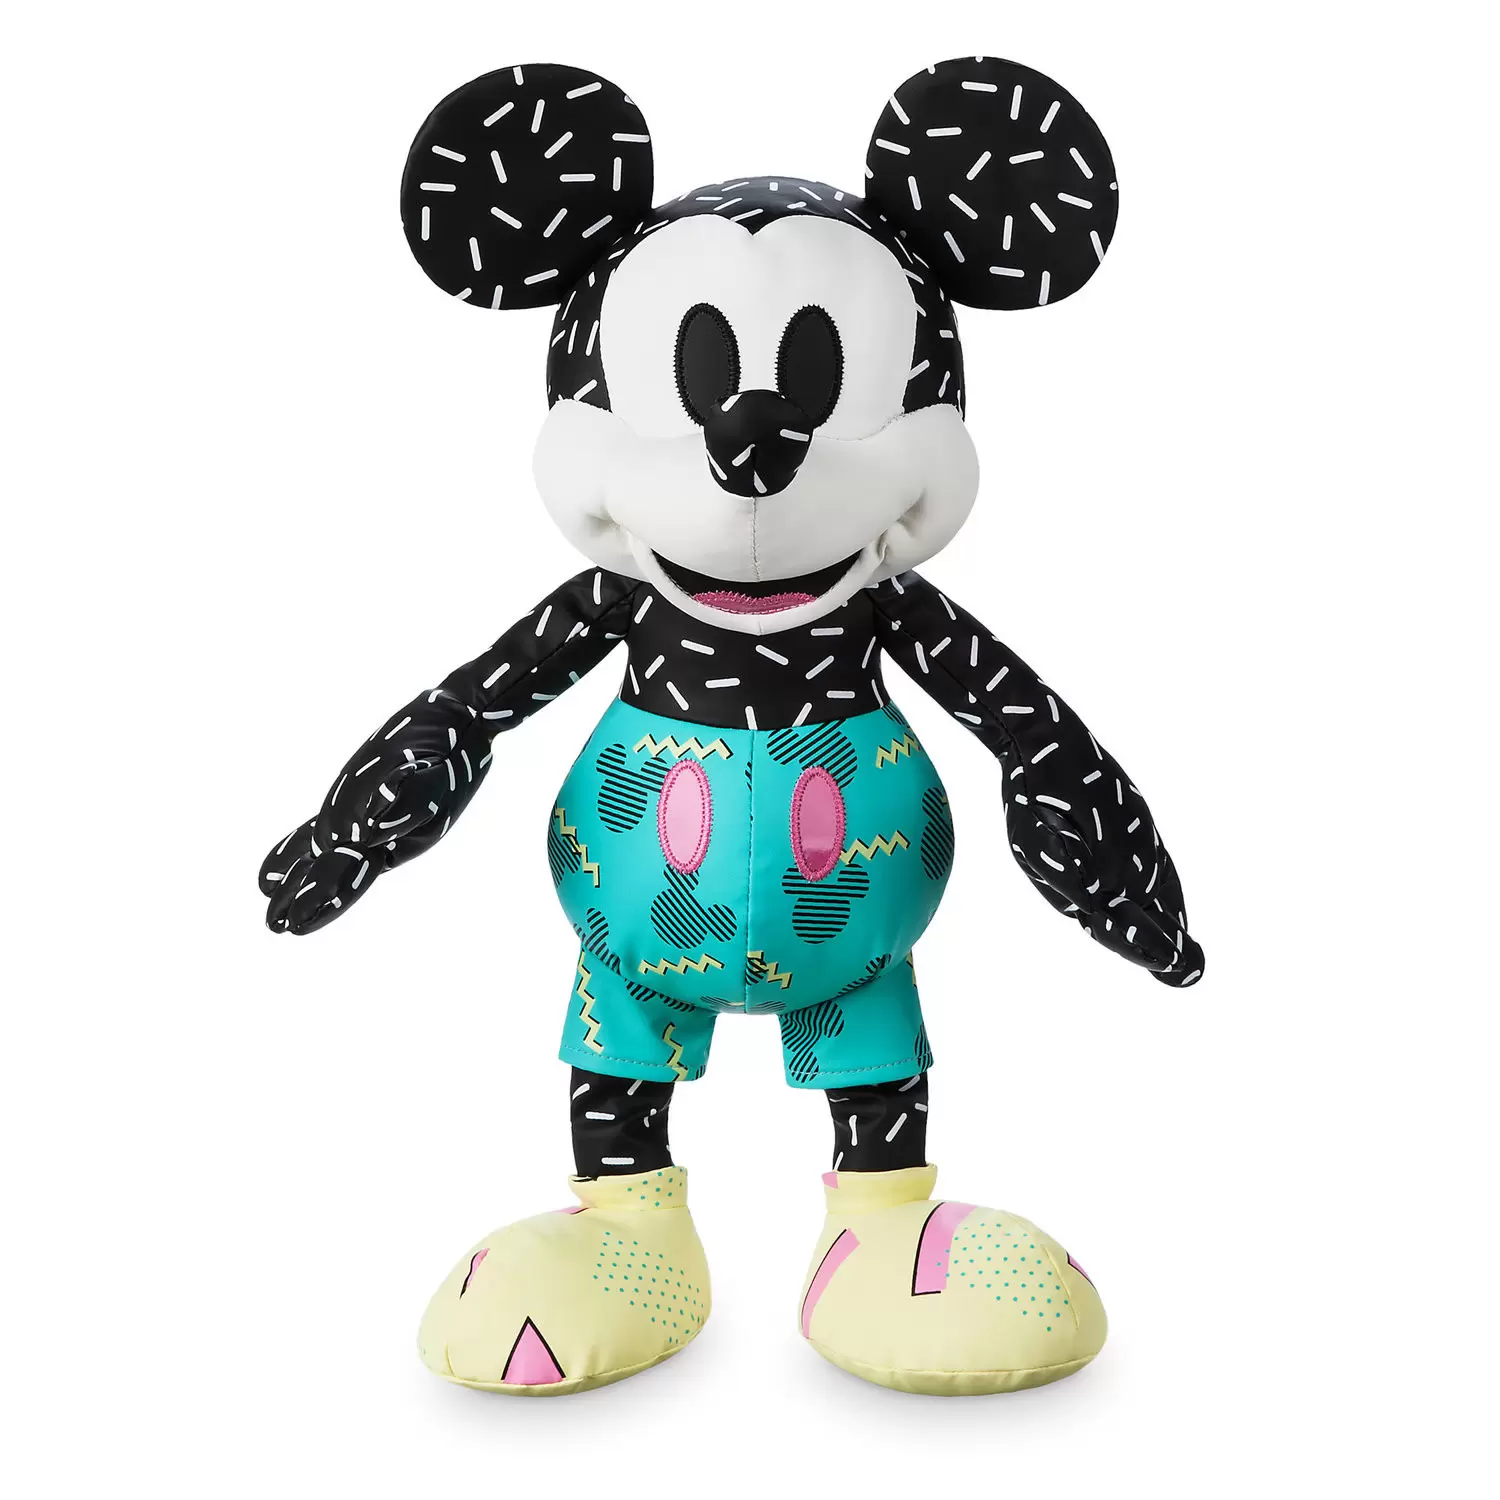 Souvenirs de Mickey  / Mickey Mouse Memories - Mickey Memories Septembre 2018